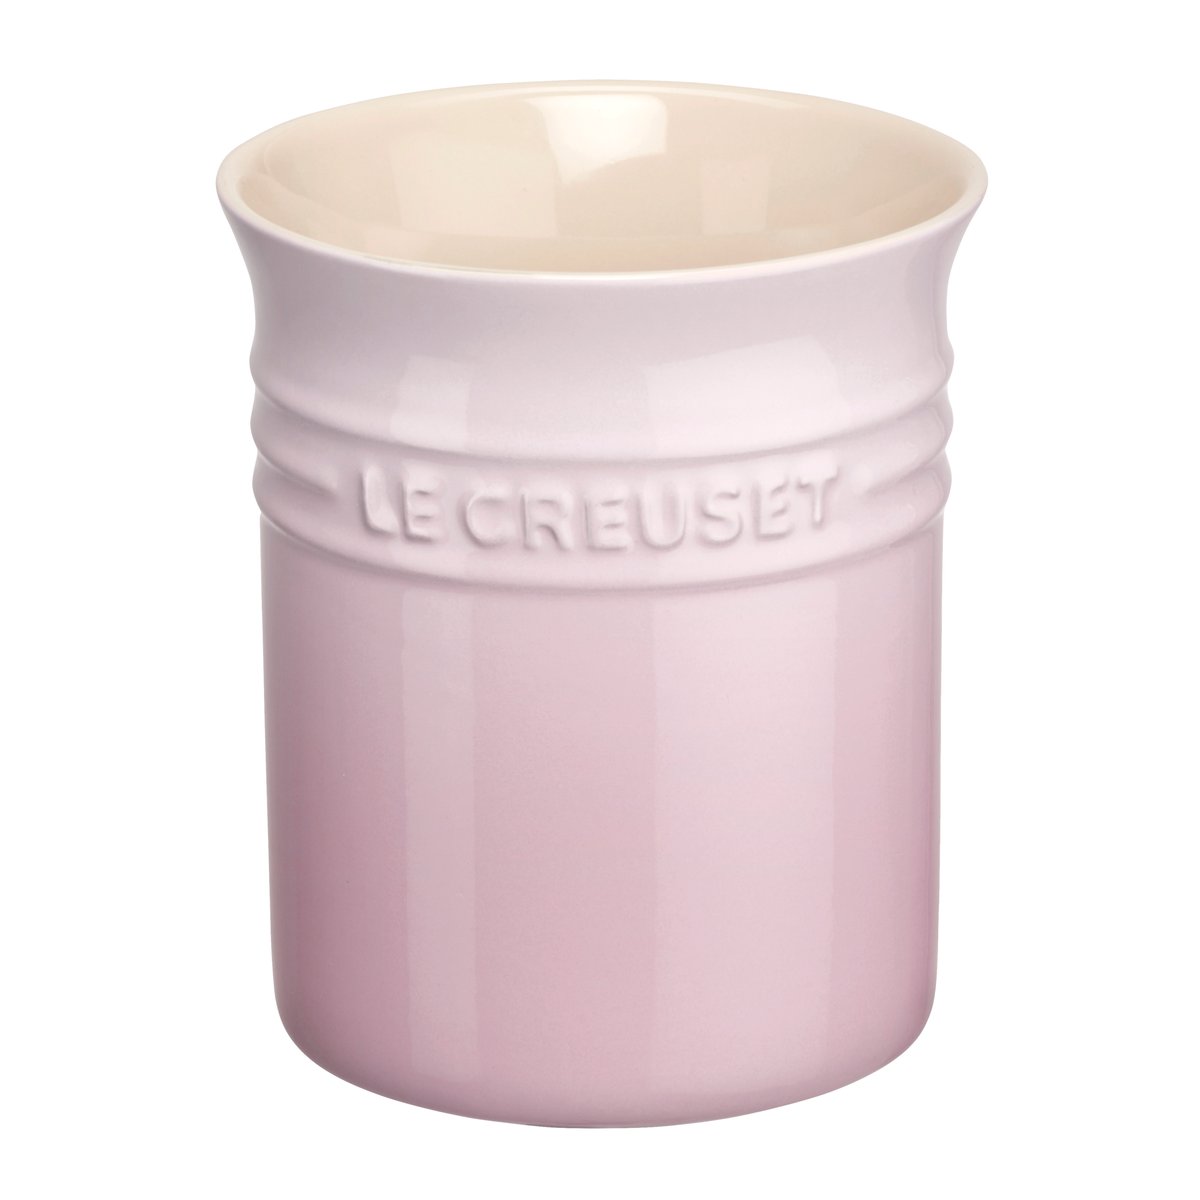 Le Creuset Le Creuset aterimien ja ottimien säilytyspurkki 1,1 l Shell Pink